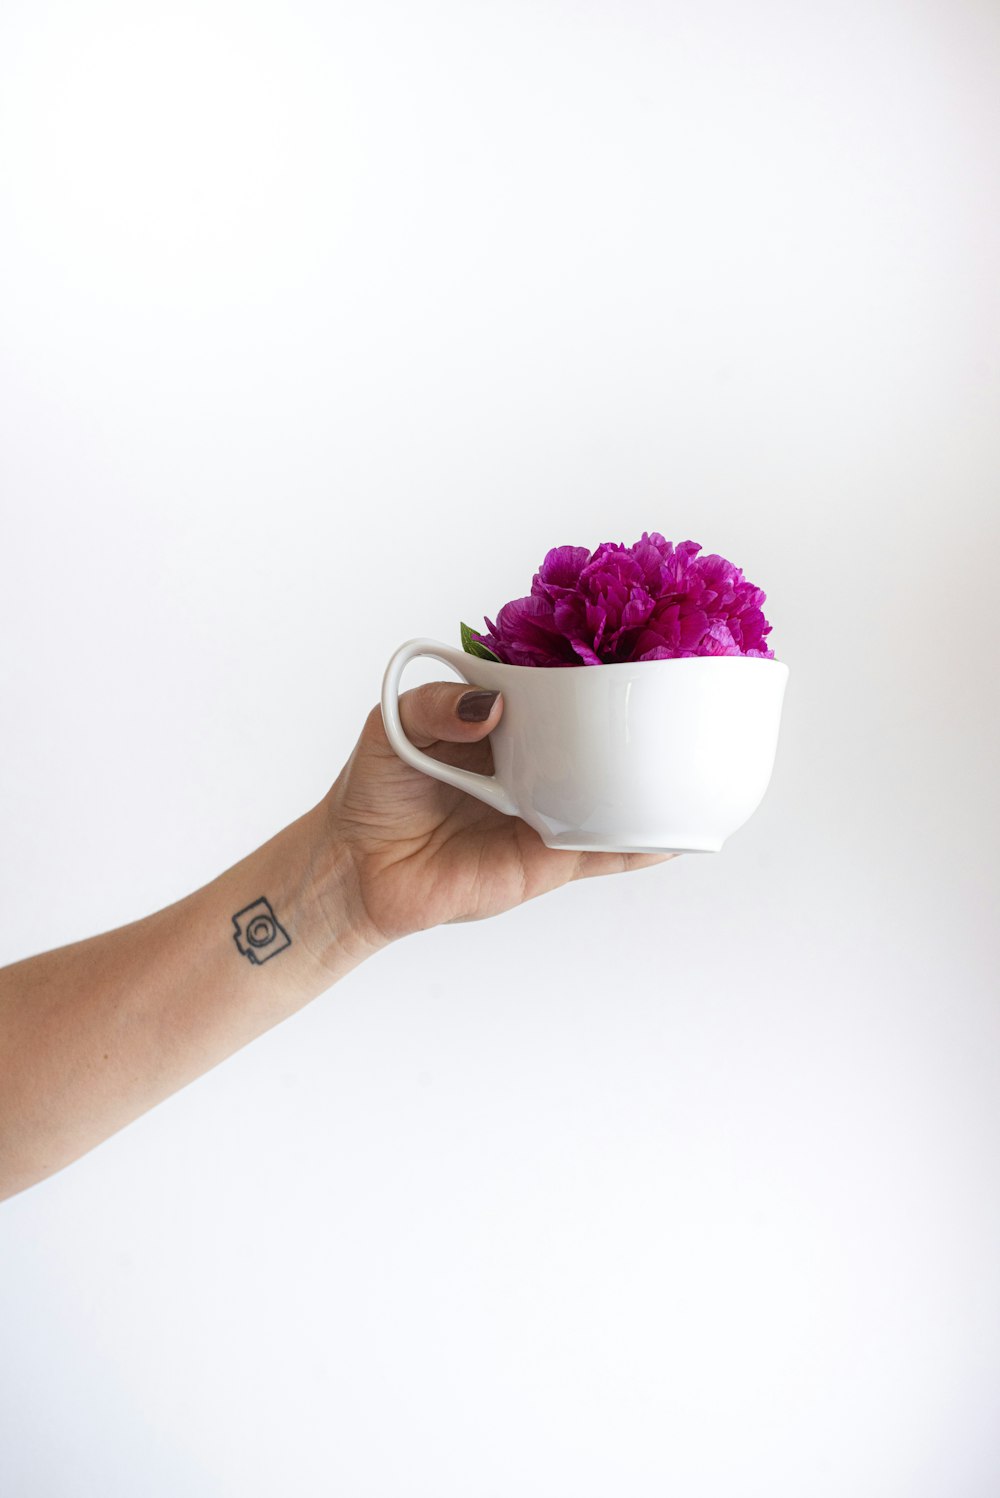 personne tenant une tasse en céramique blanche avec des fleurs roses